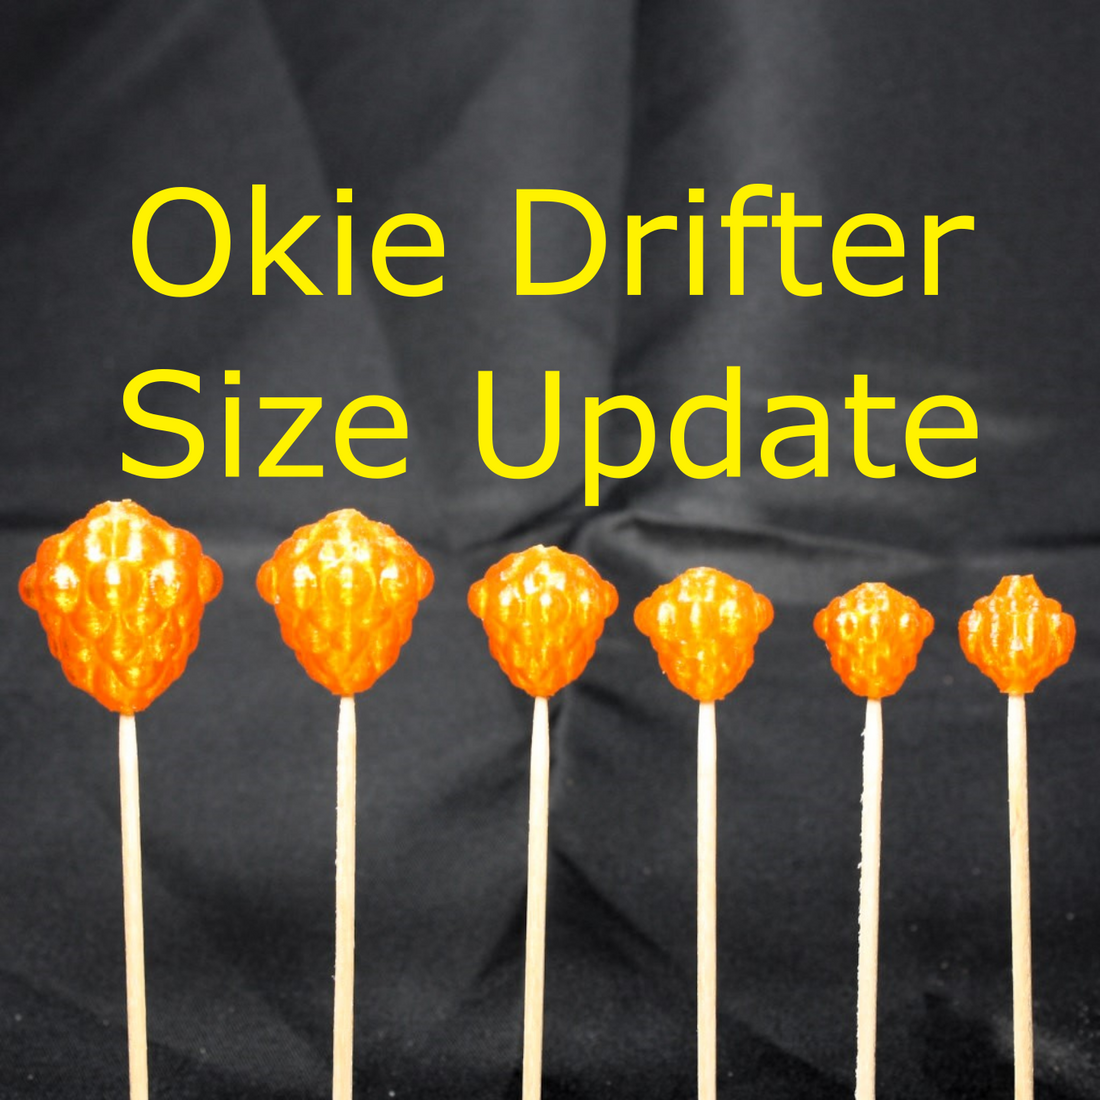 Okie Drifter Size Update